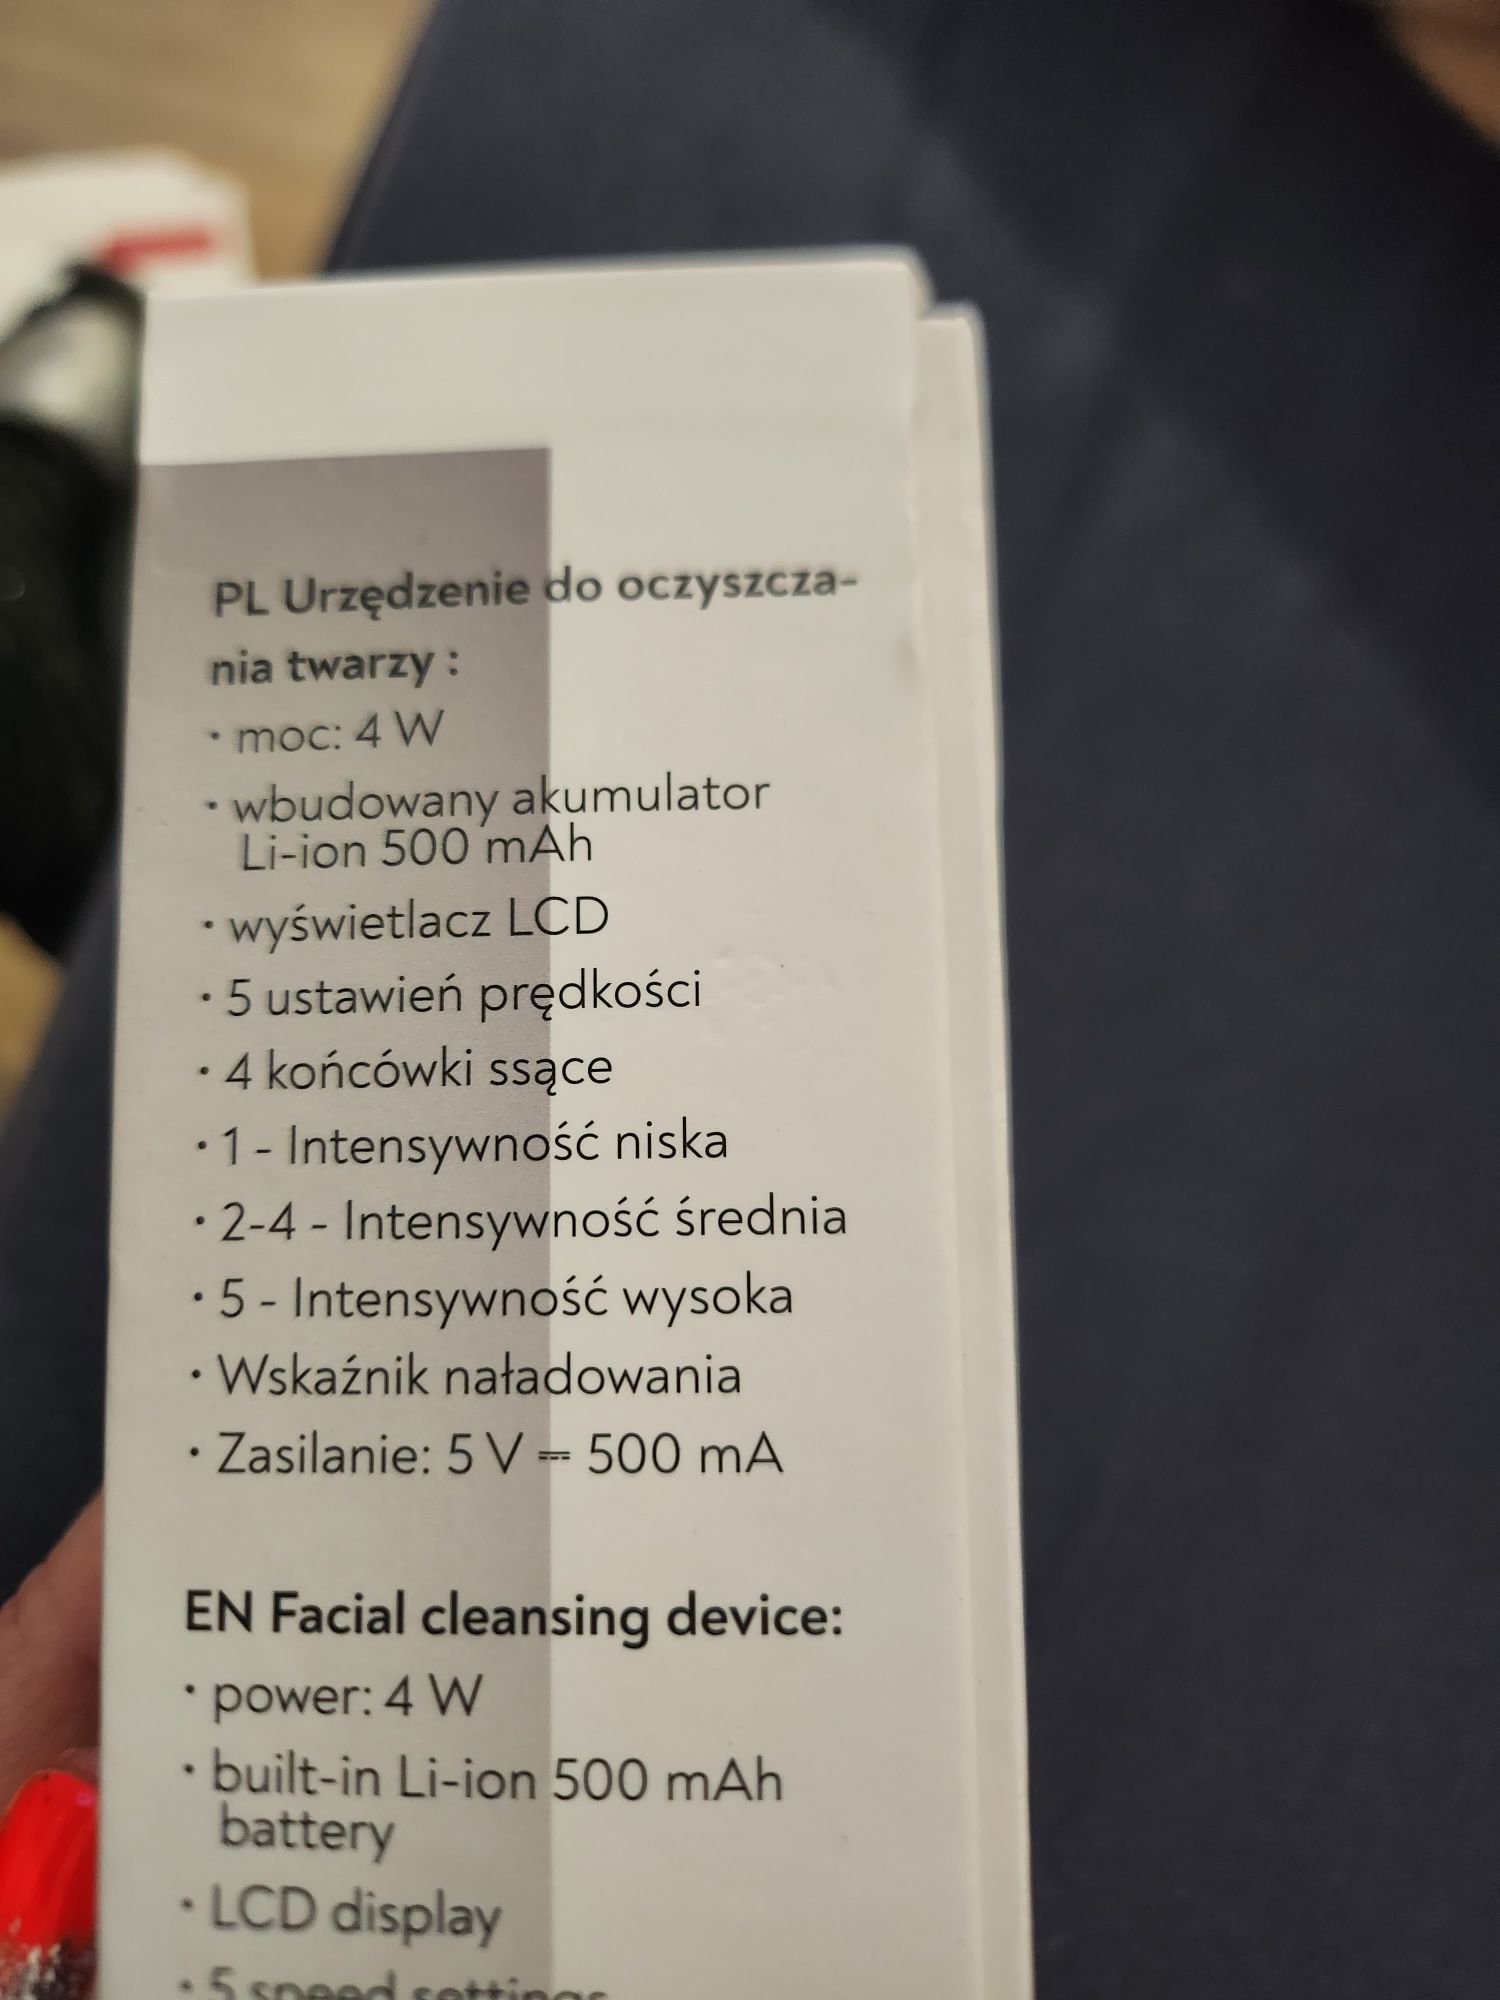 Urzadzenie do oczyszczania twarzy